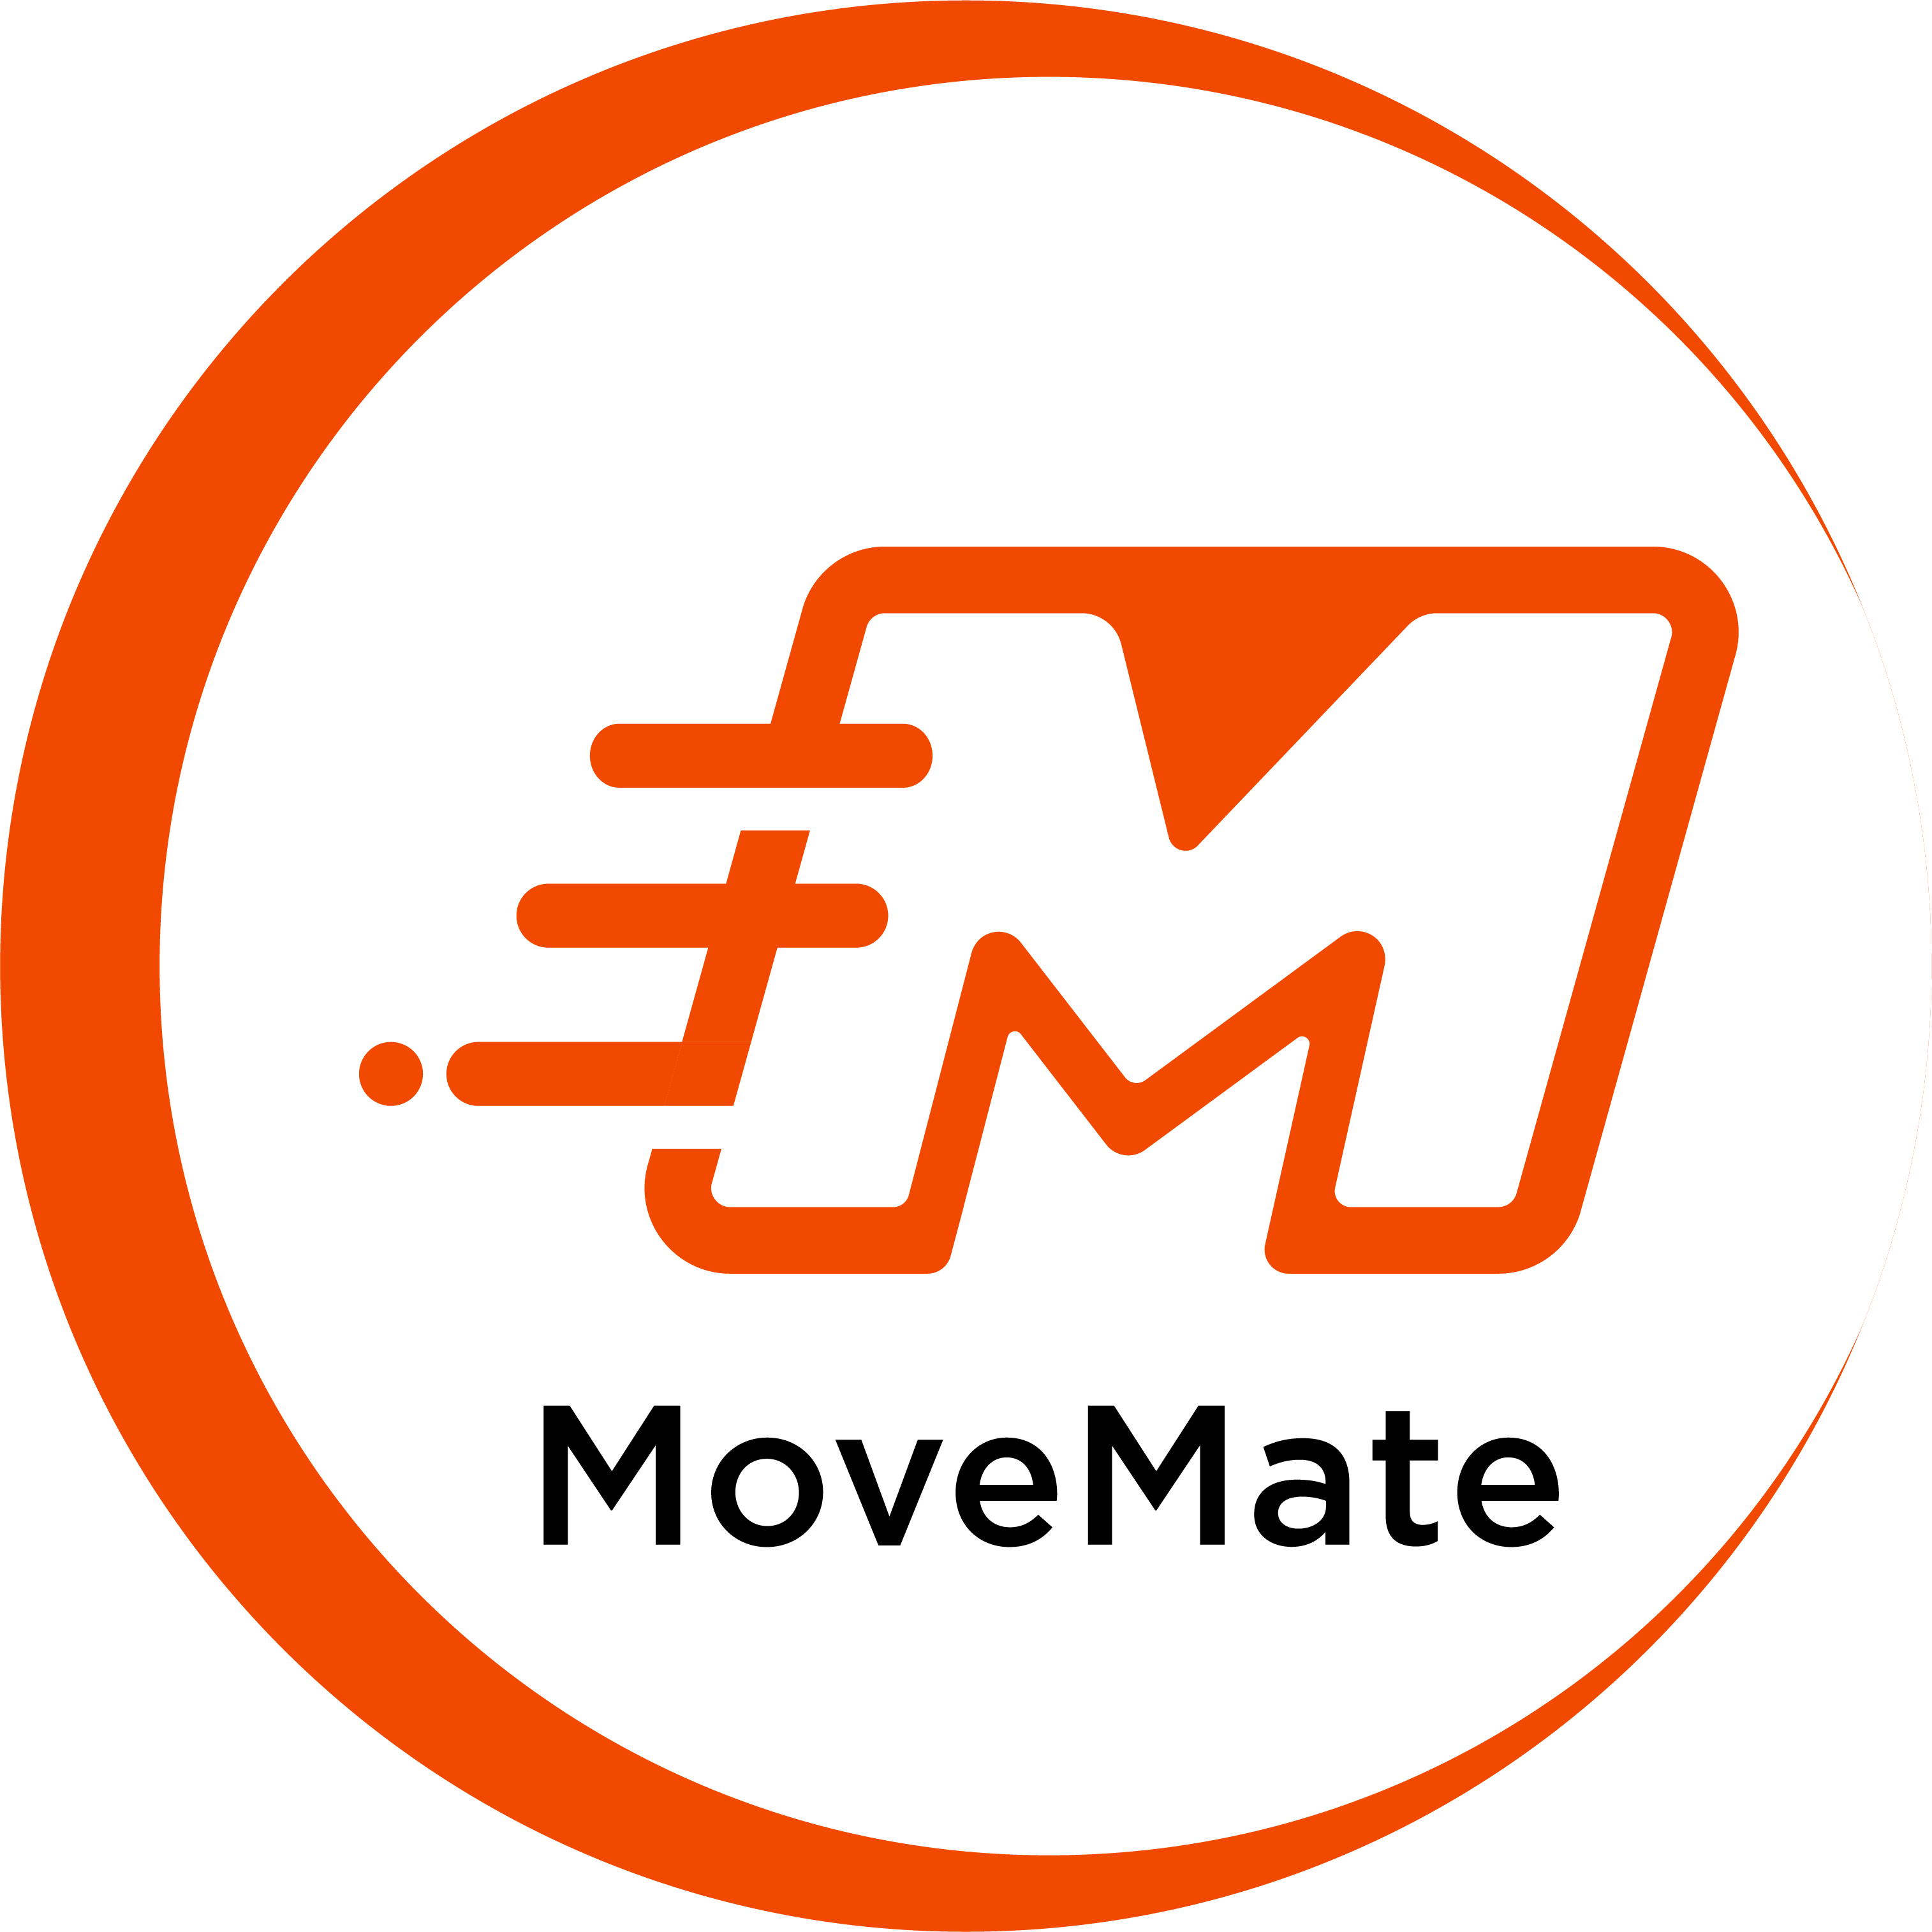 MoveMate